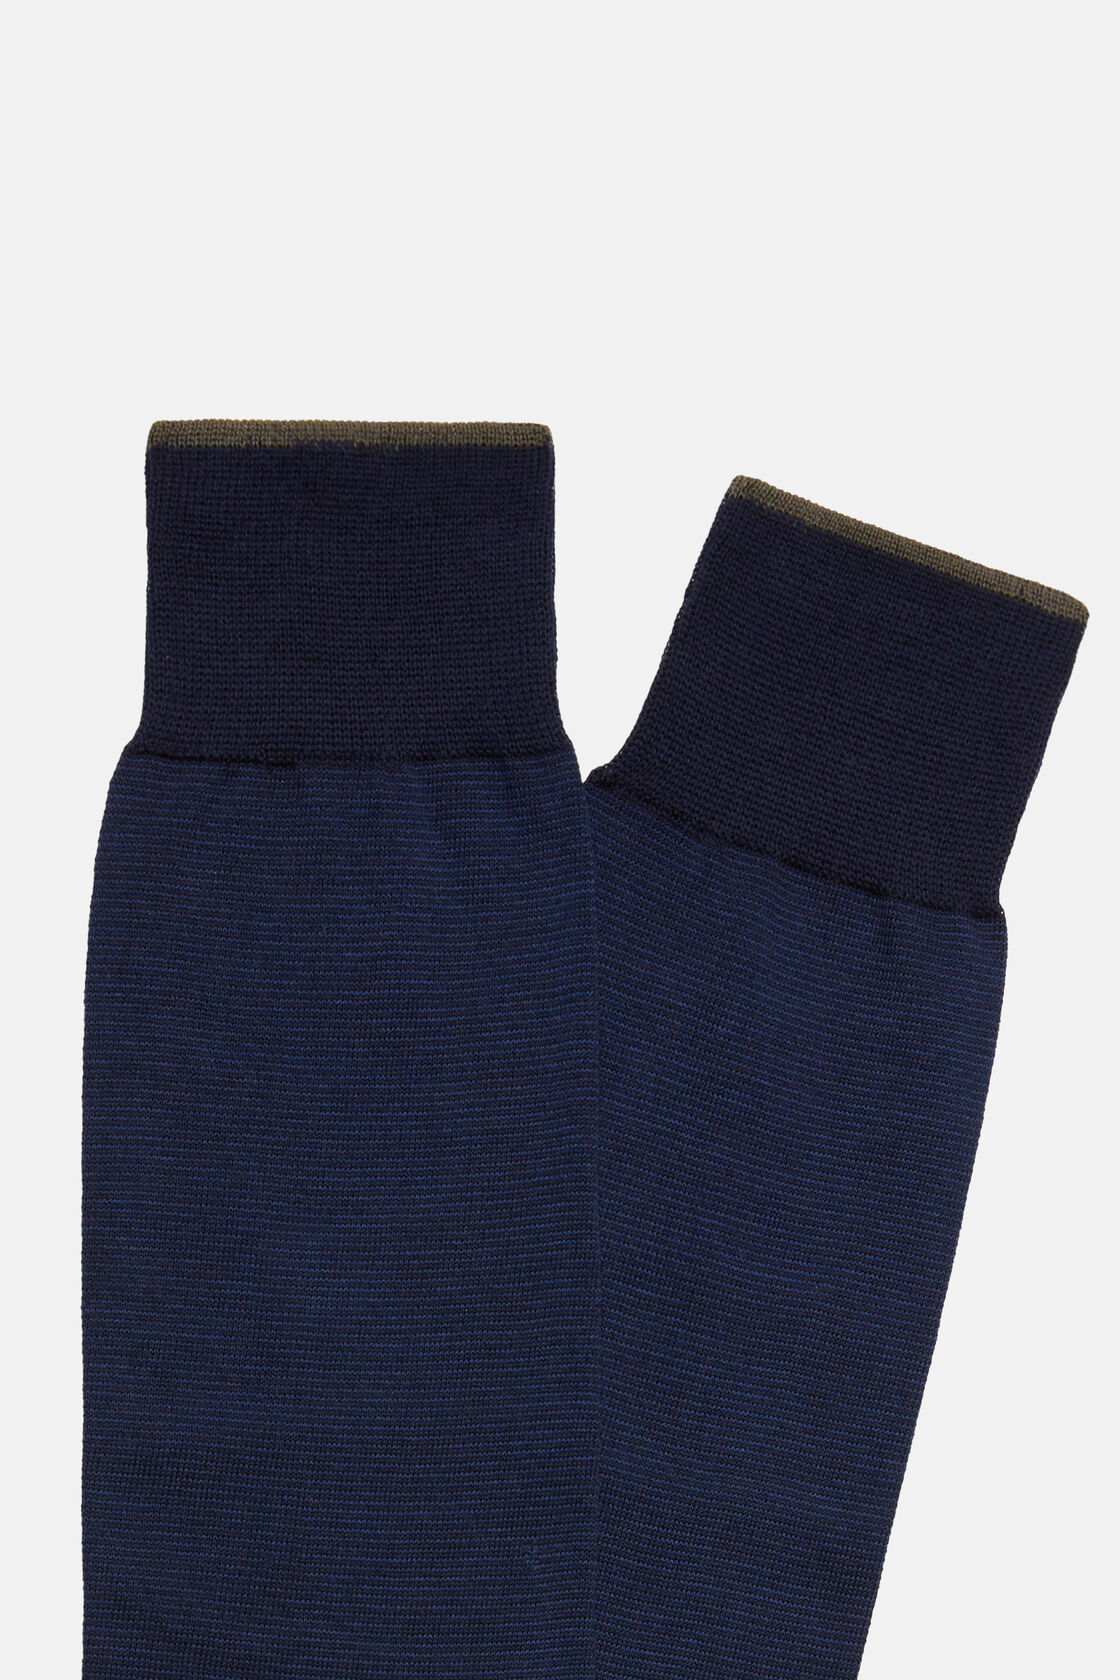 Chaussettes Rayées En Coton, bleu marine, hi-res